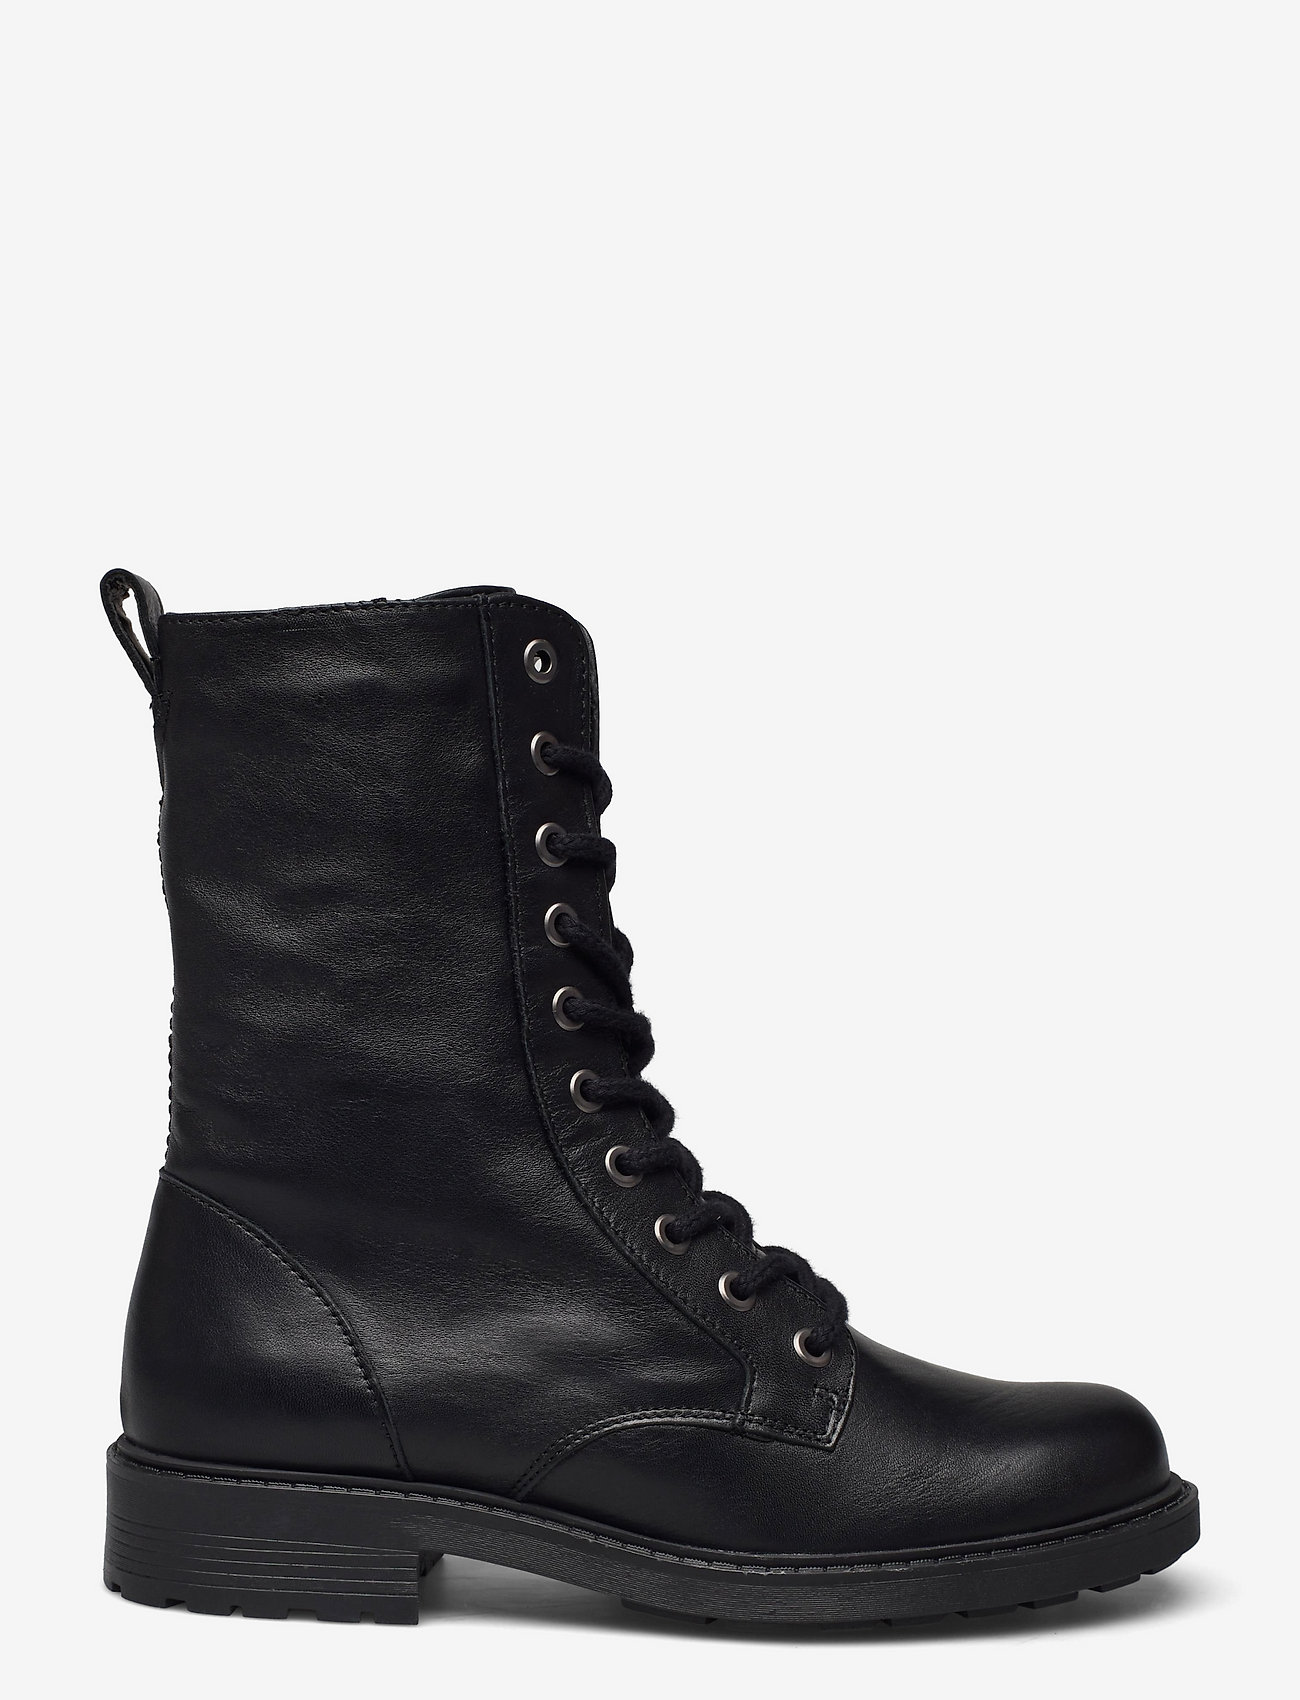 Clarks - Orinoco2 Style - buty sznurowane - black leather - 1